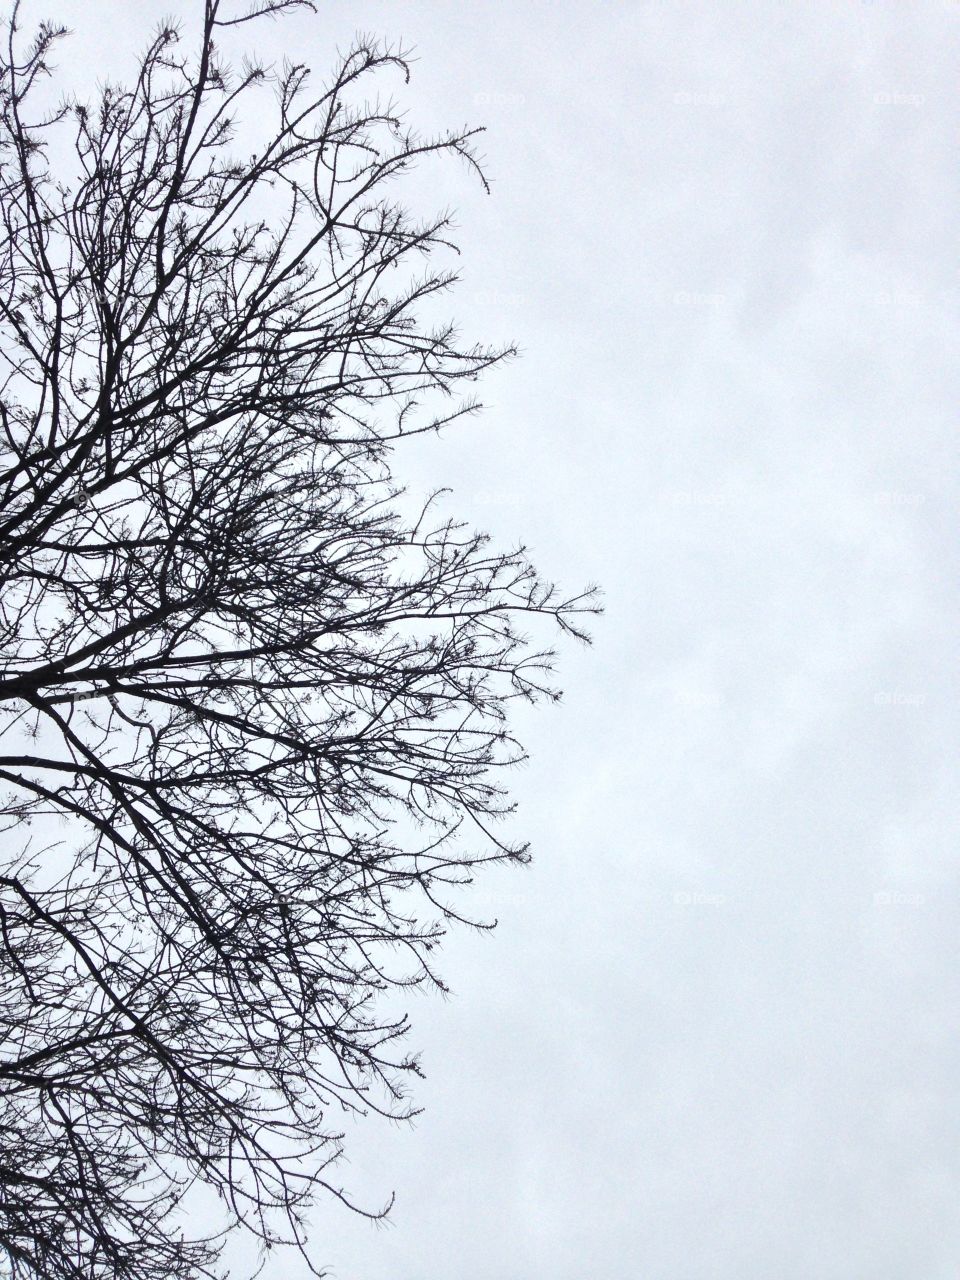 Tree in the sky